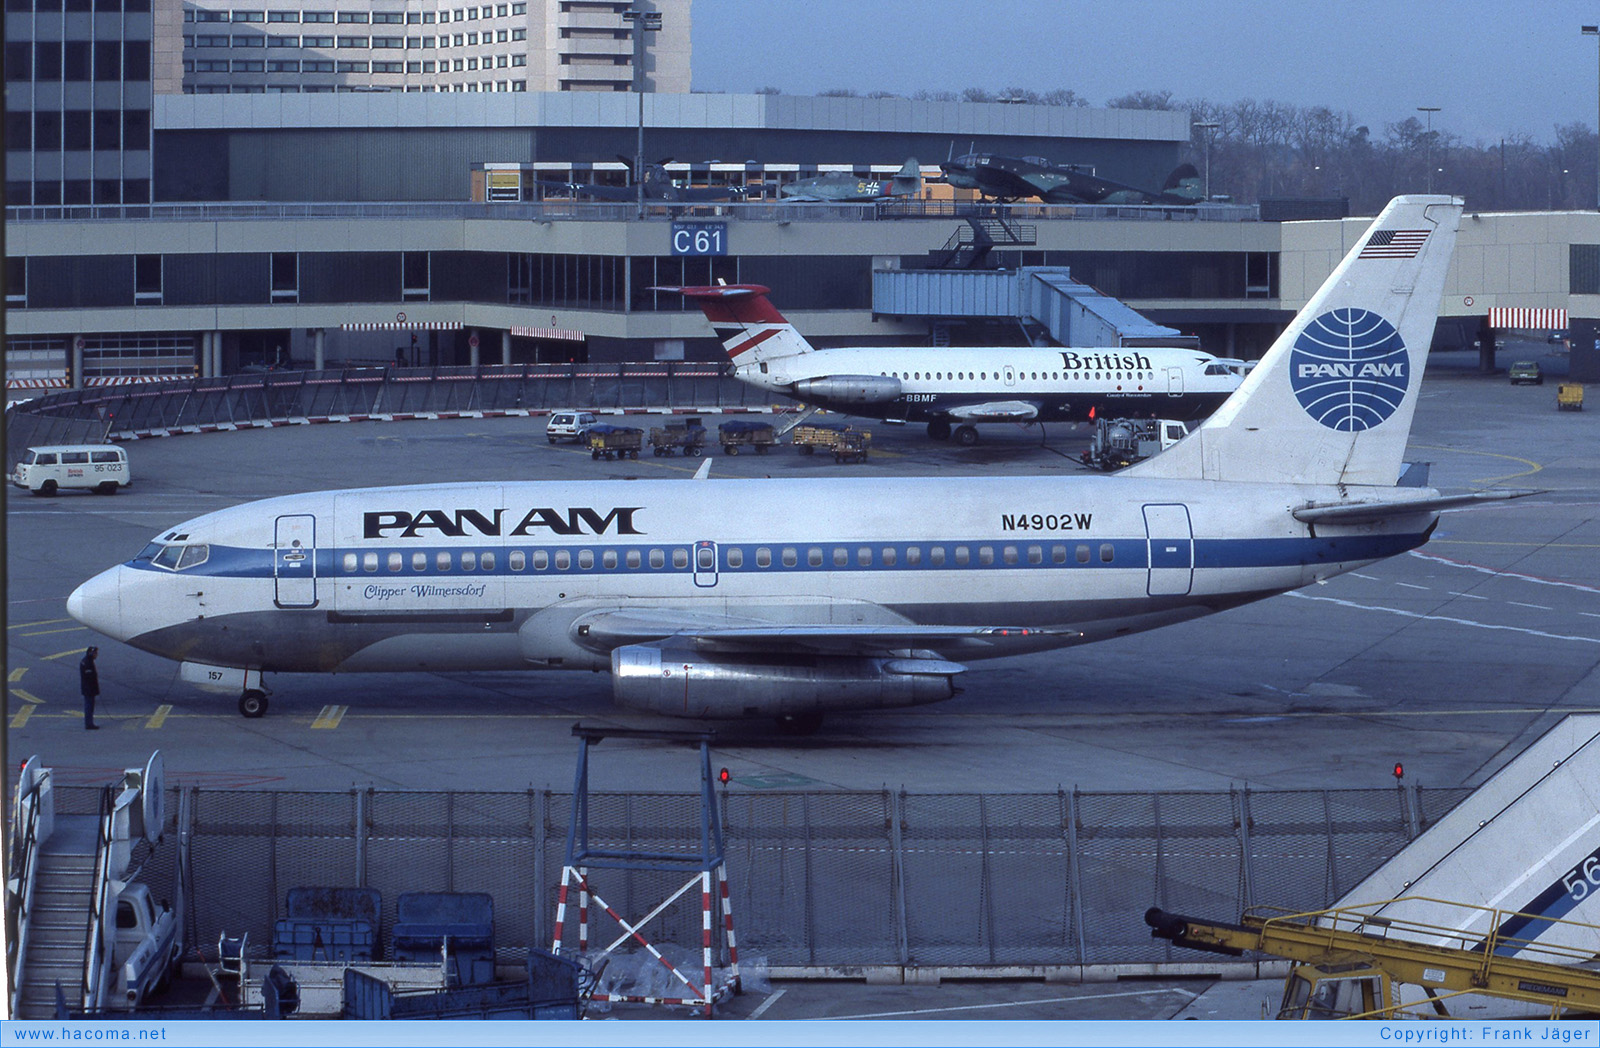 Photo of N4902W - Pan Am Clipper Wilmersdorf - Frankfurt International Airport - Dec 1, 1984